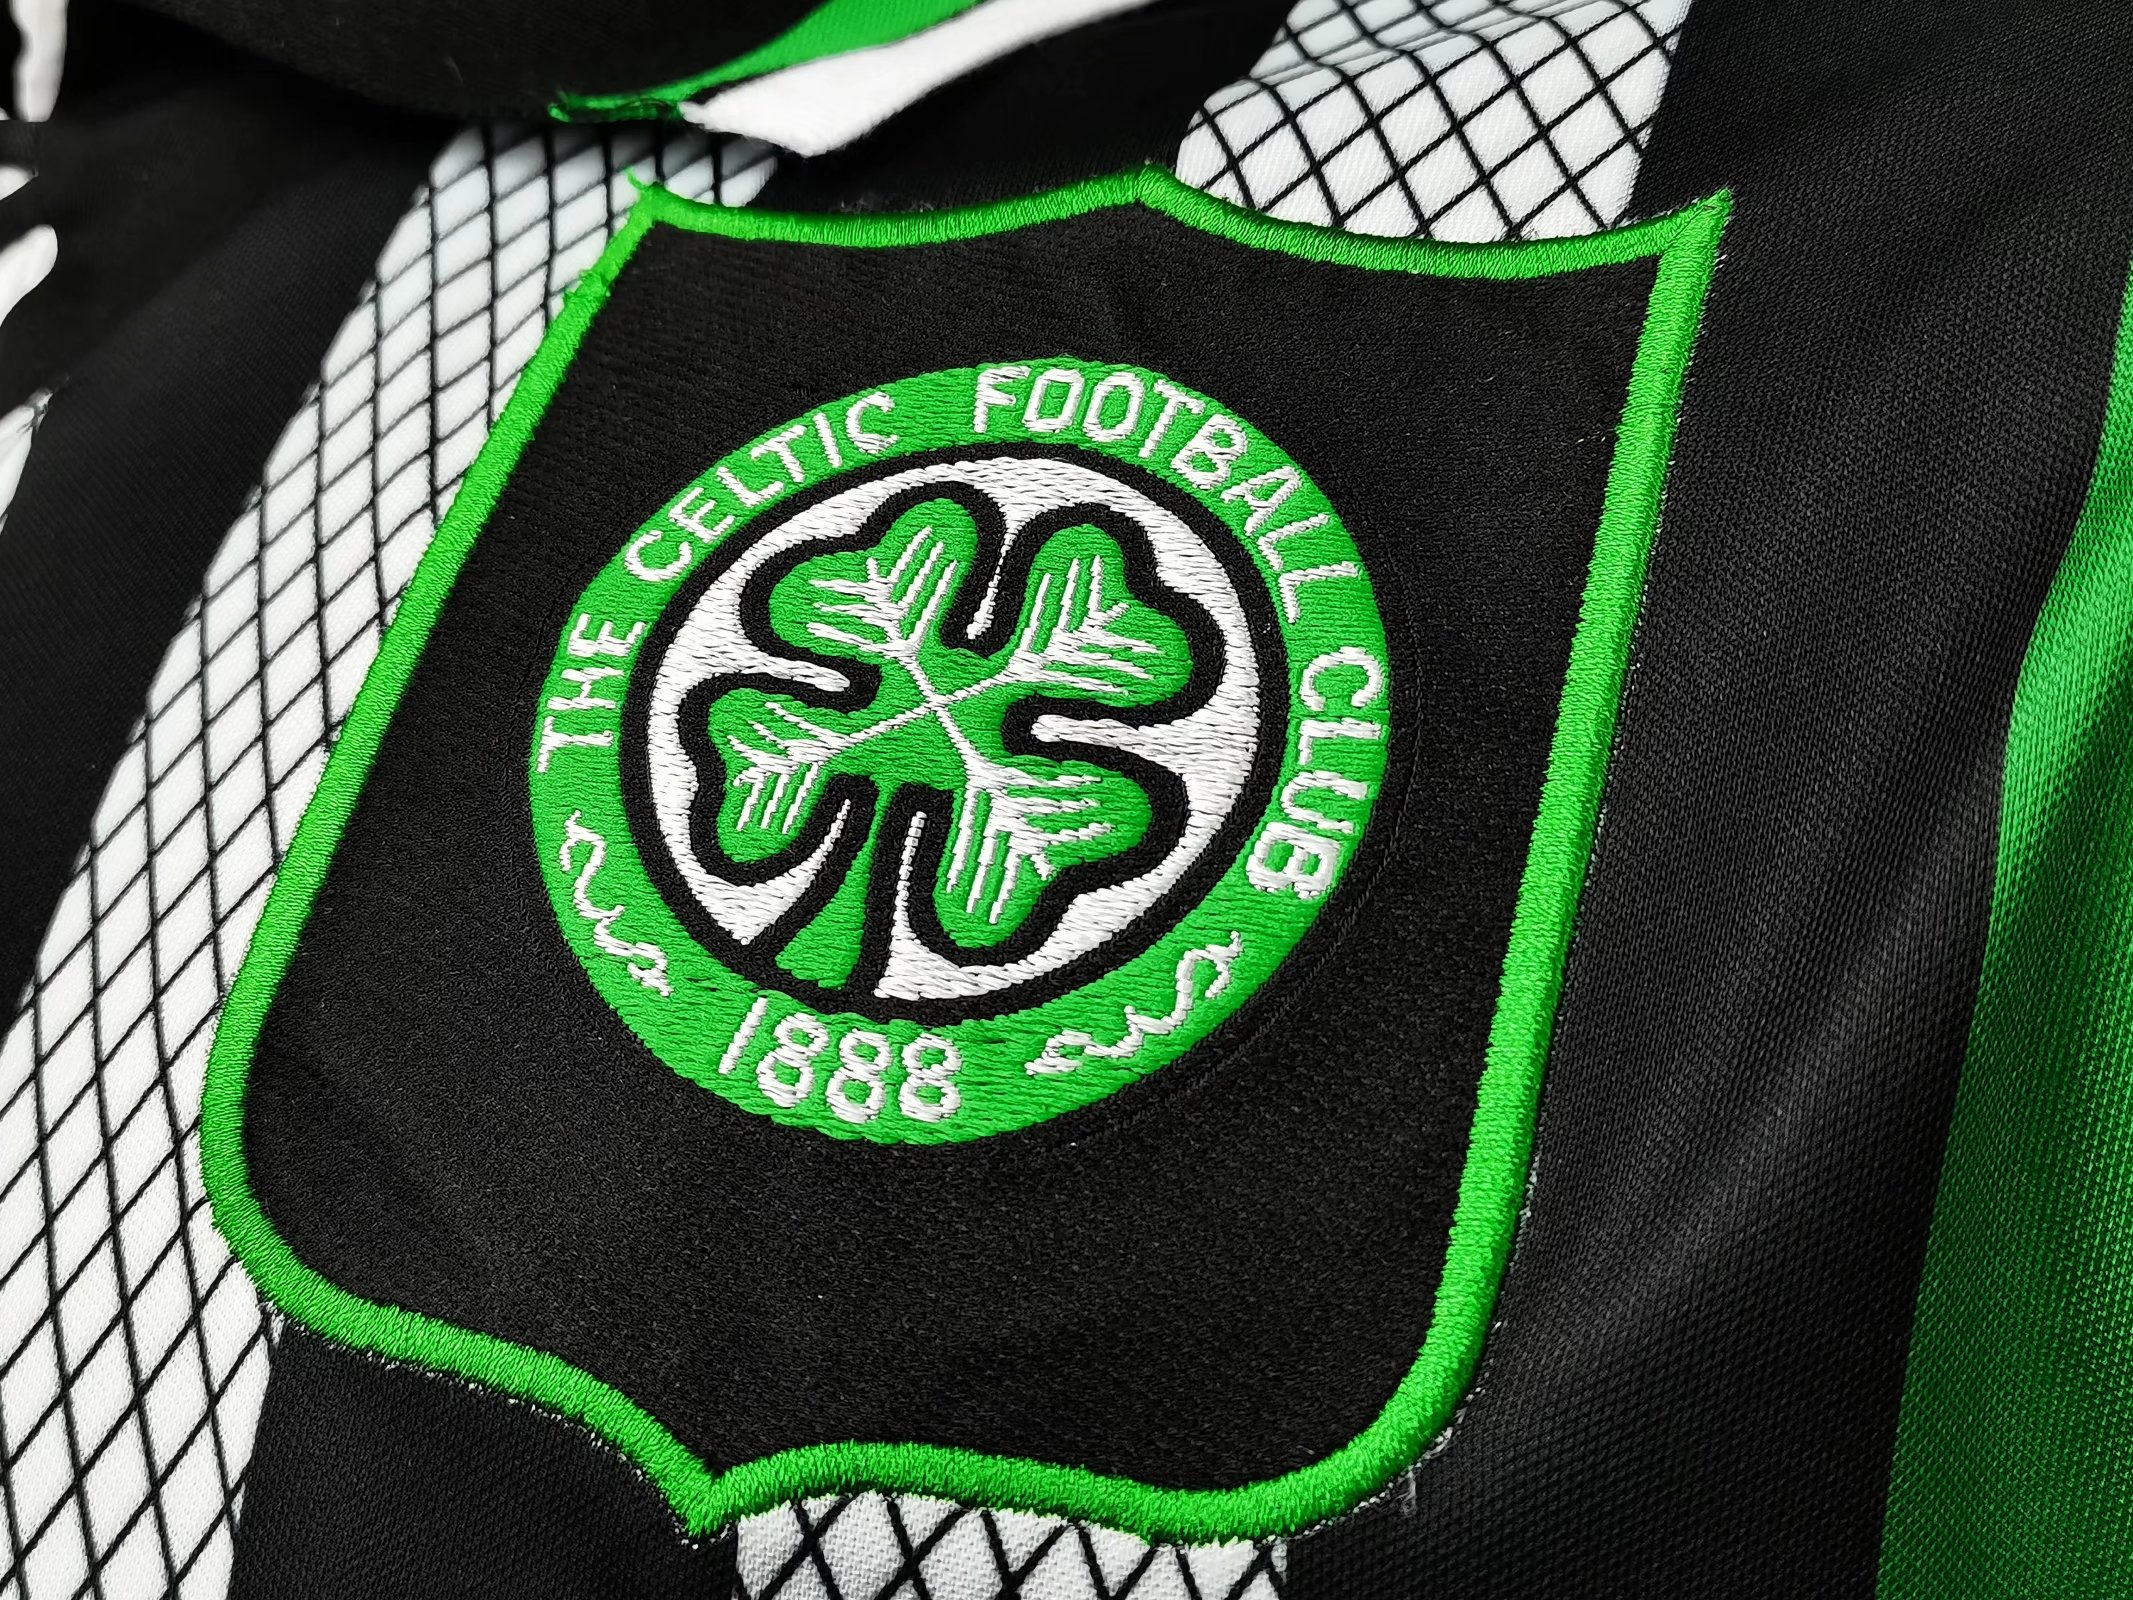 Celtic 1994-95 Away Kit